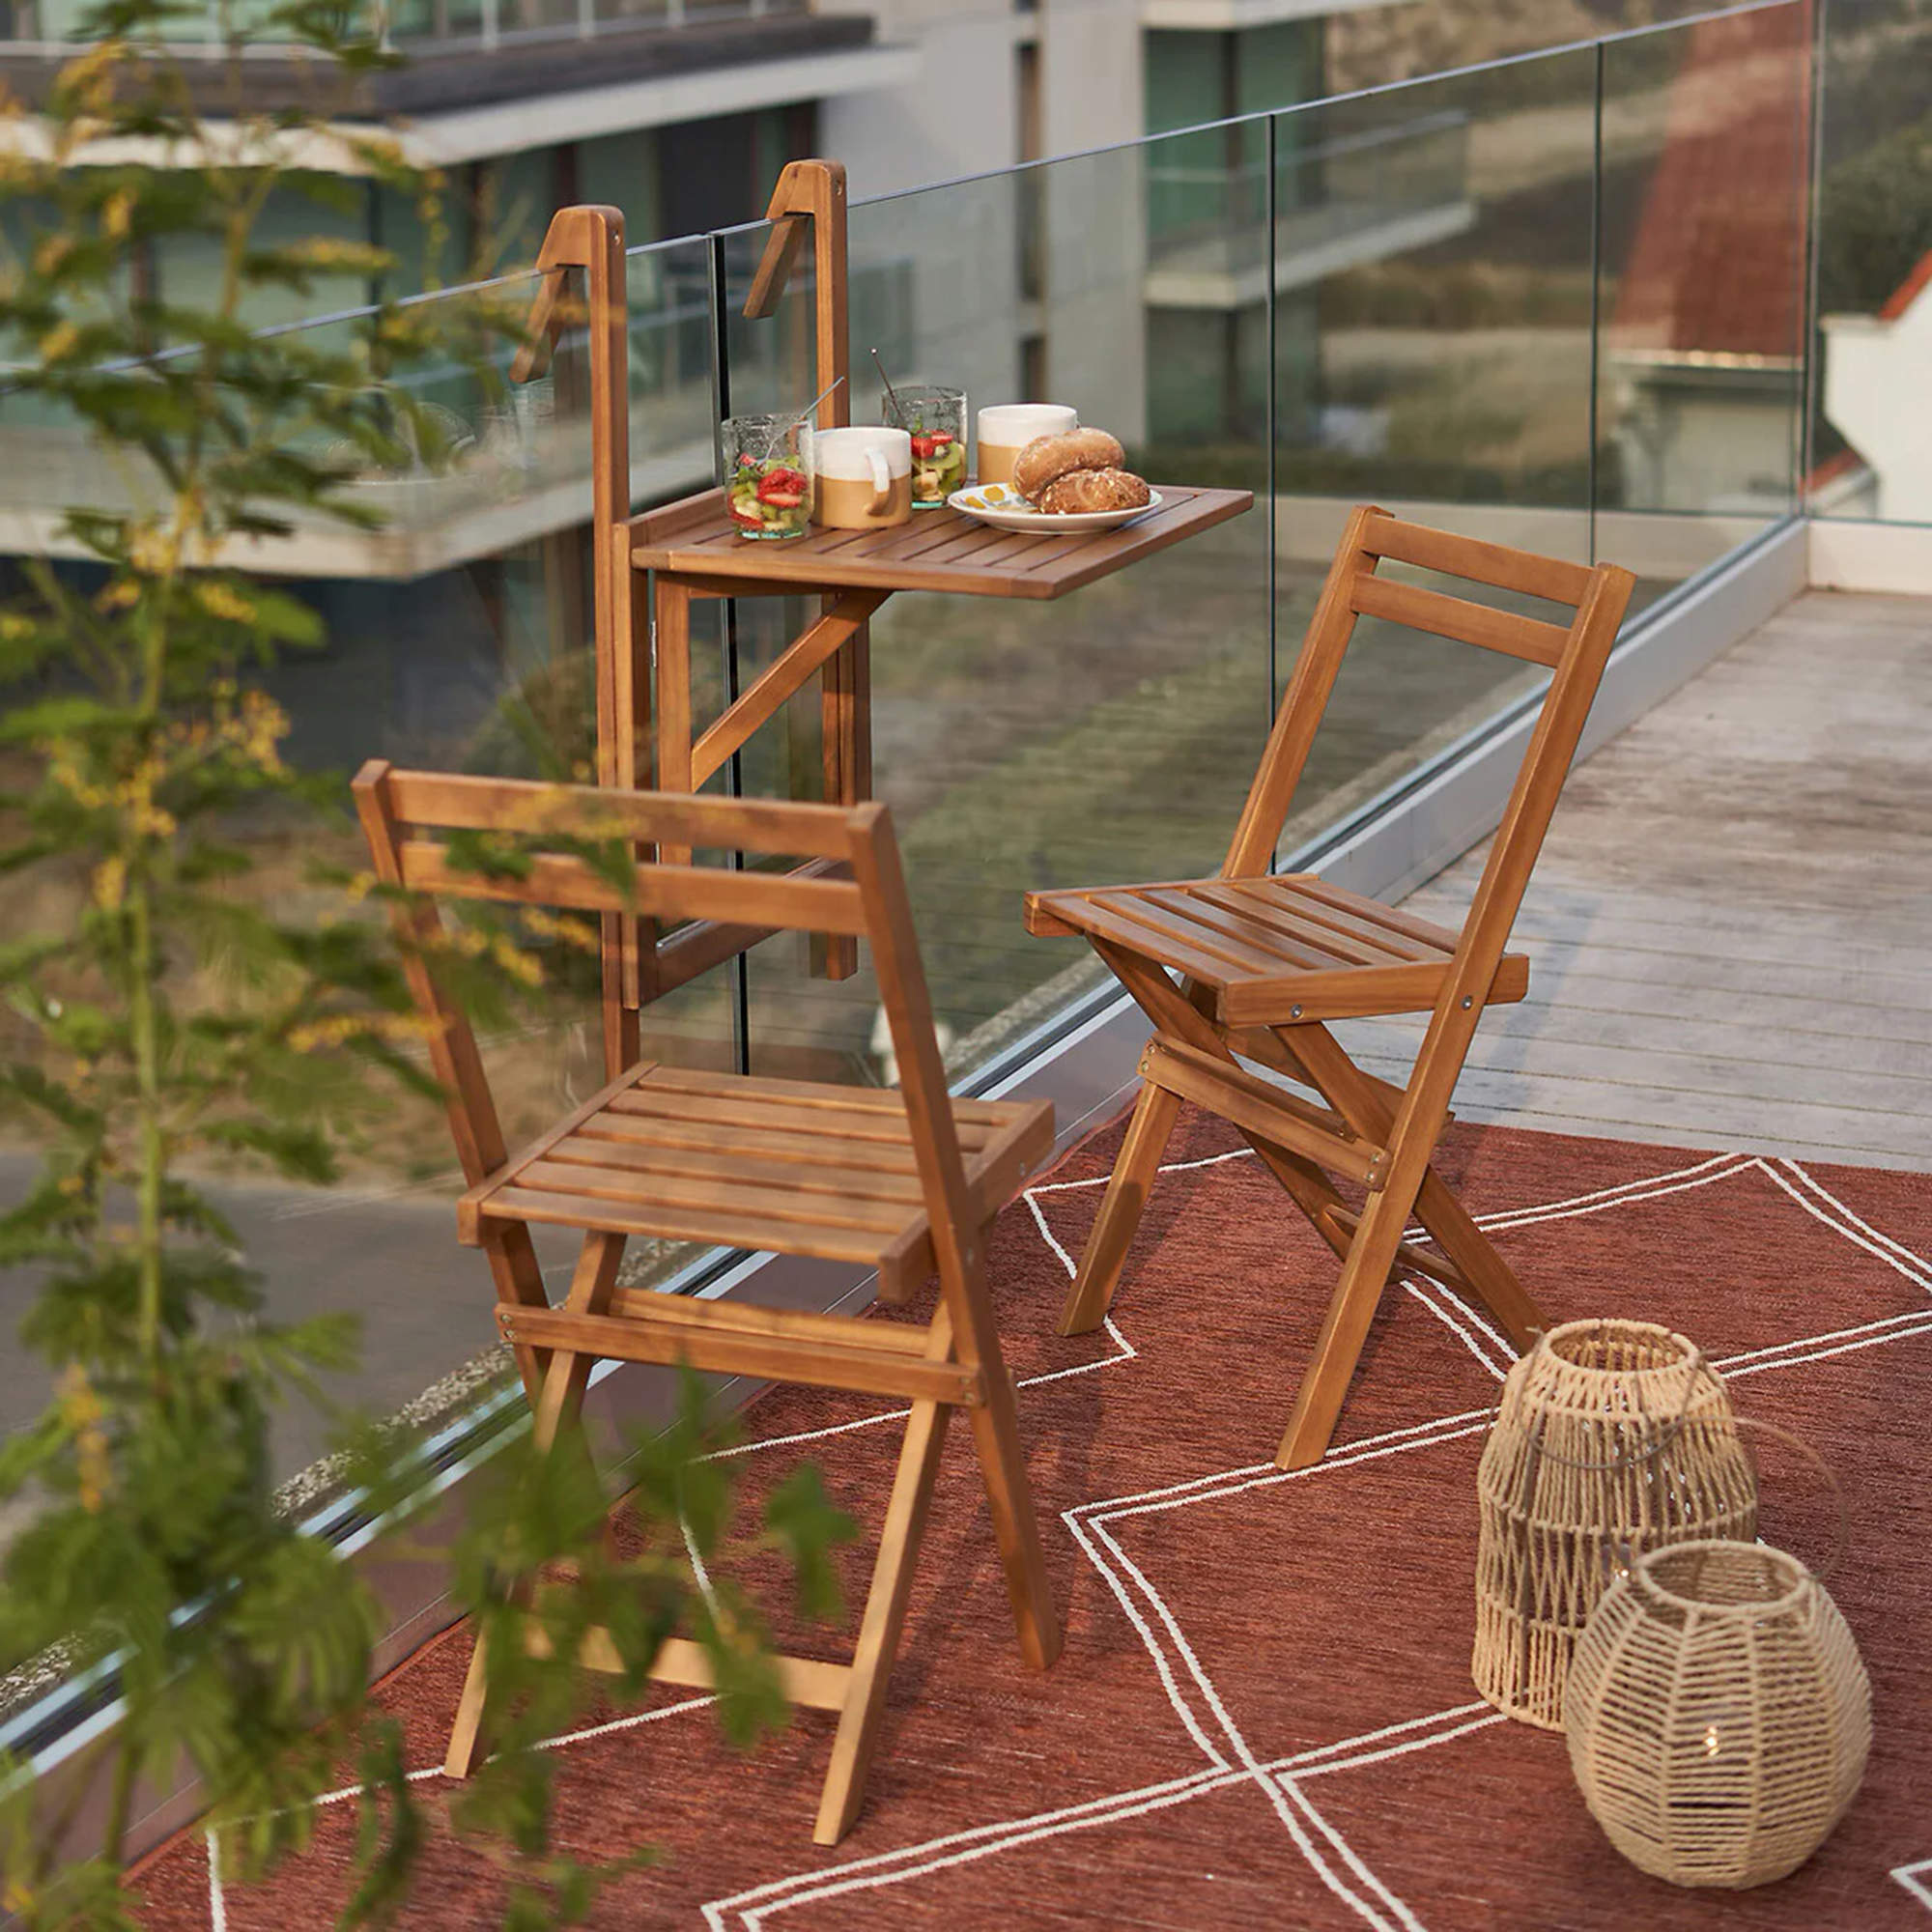 Mesa y sillas plegables de La Redoute para terraza.